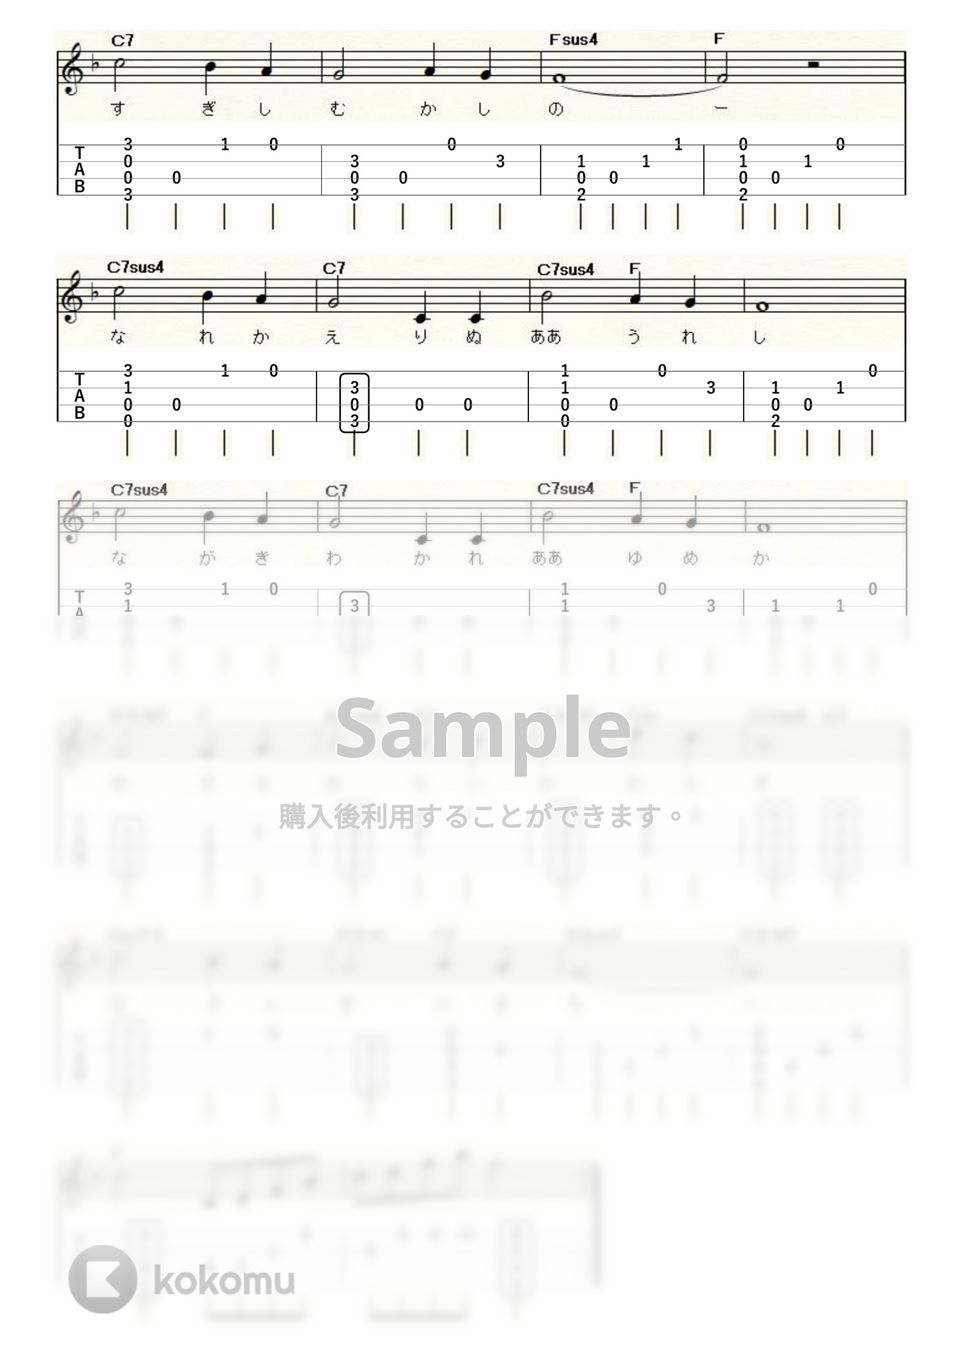 ロング・ロング・アゴー (ｳｸﾚﾚｿﾛ/High-G・Low-G/初級～中級) by ukulelepapa